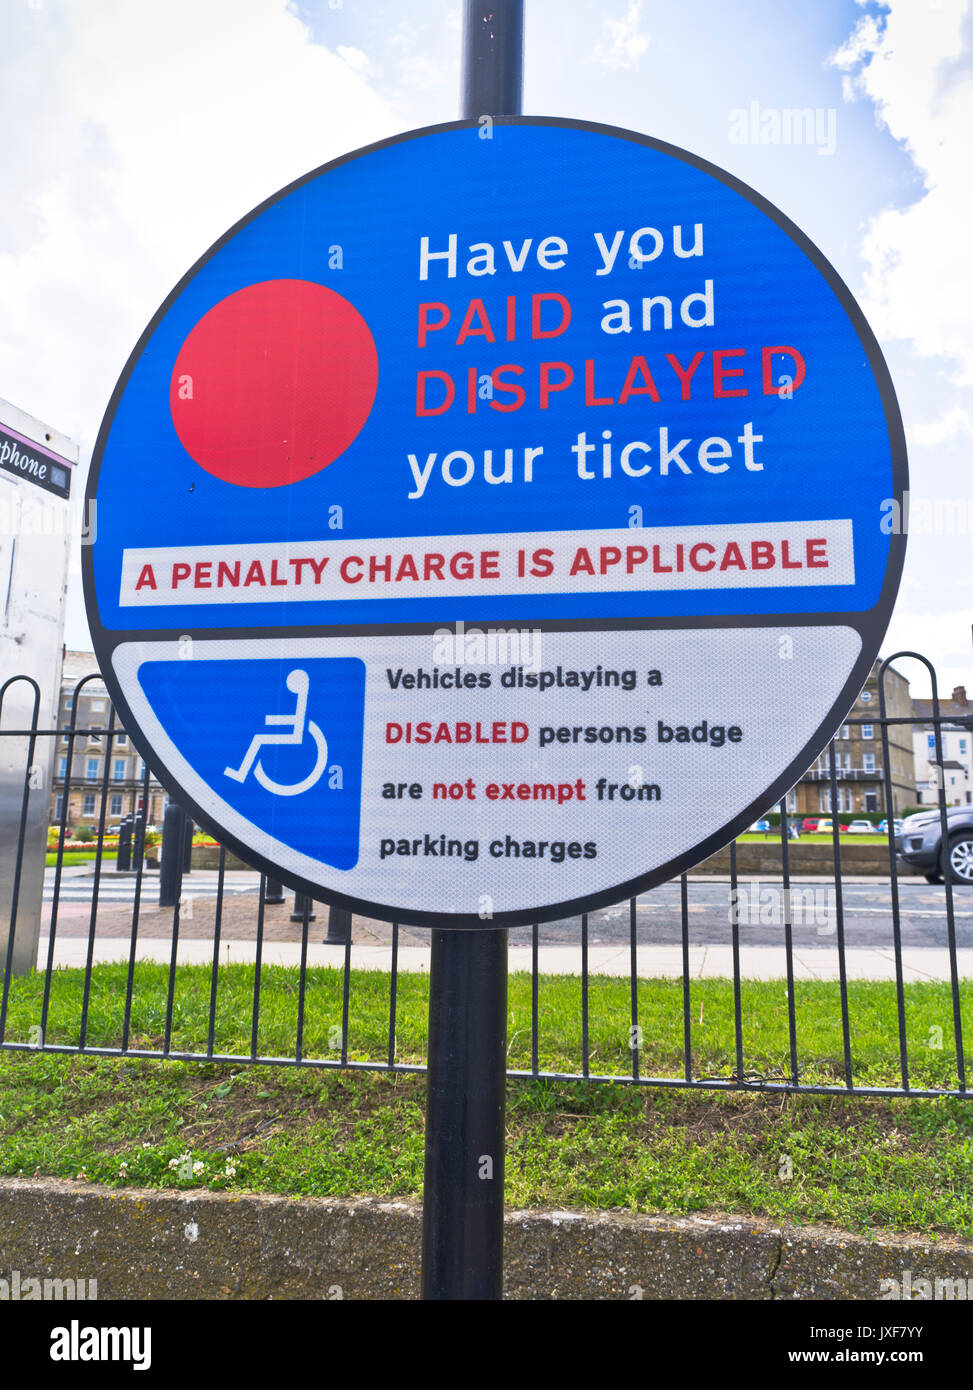 dh Pay and Display PARKING UK Pay and display sign les lecteurs de badges handicapés ne sont pas exemptés de parking Banque D'Images